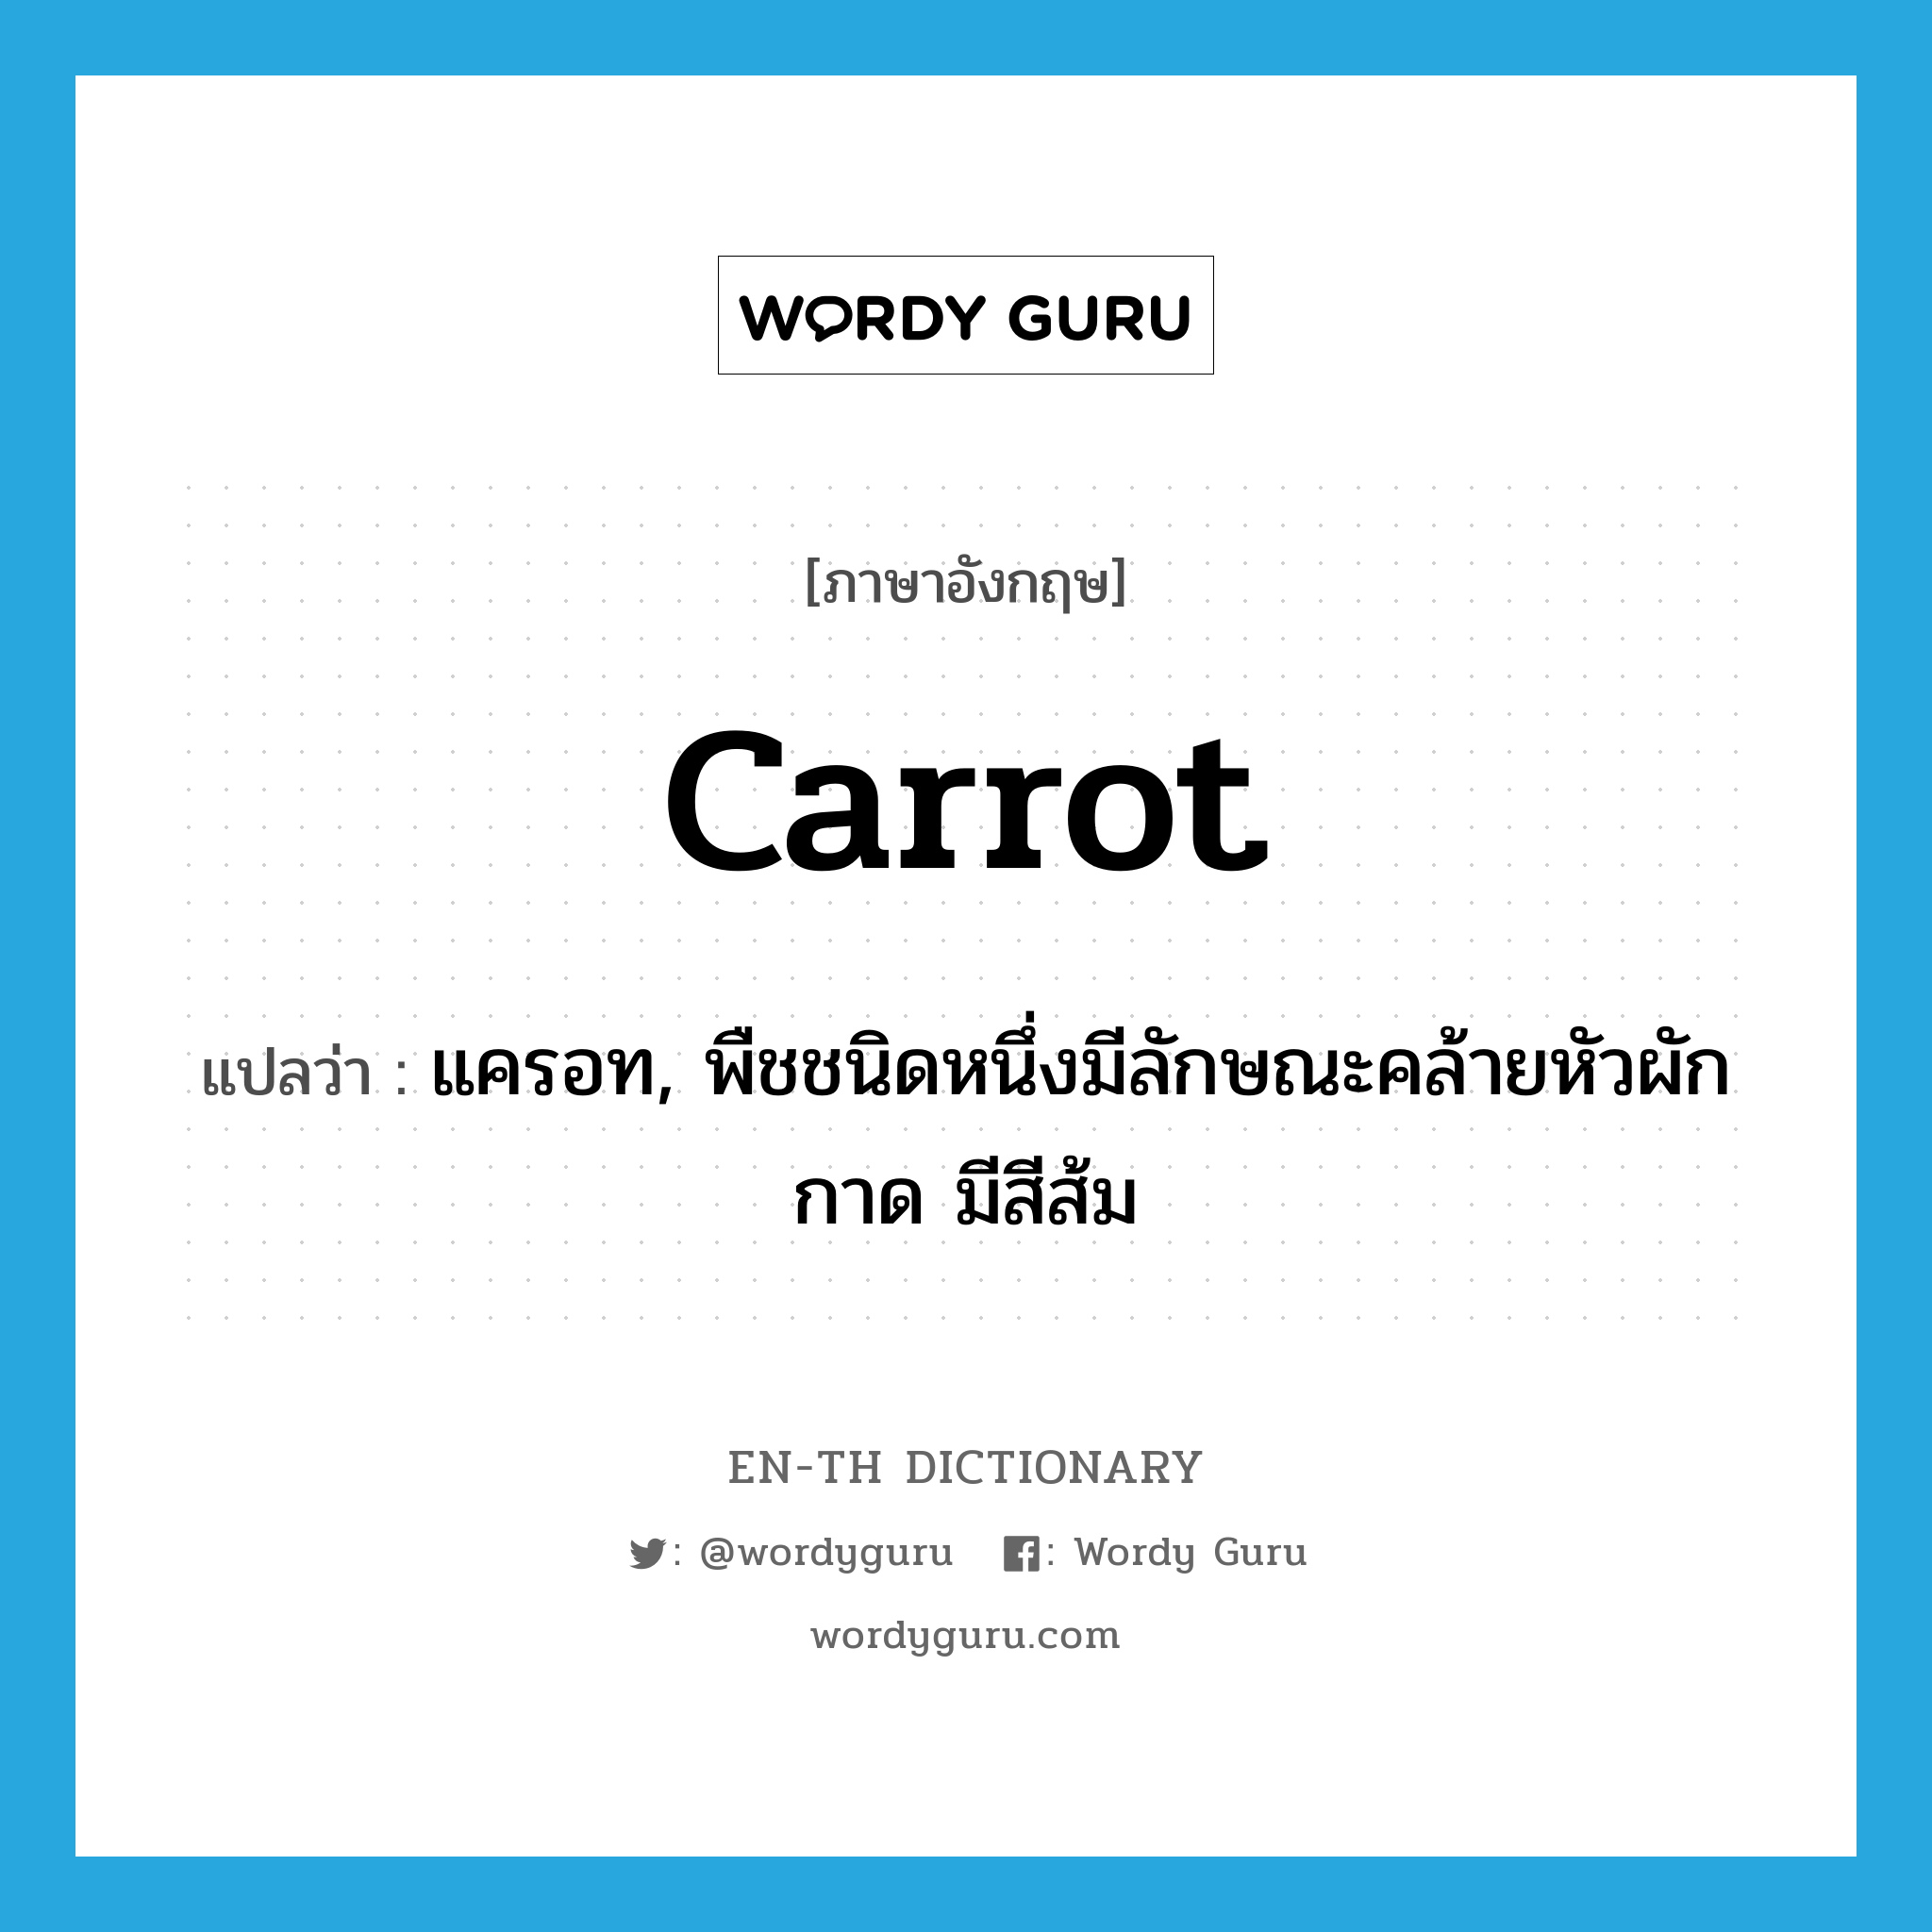 carrot แปลว่า?, คำศัพท์ภาษาอังกฤษ carrot แปลว่า แครอท, พืชชนิดหนึ่งมีลักษณะคล้ายหัวผักกาด มีสีส้ม ประเภท N หมวด N